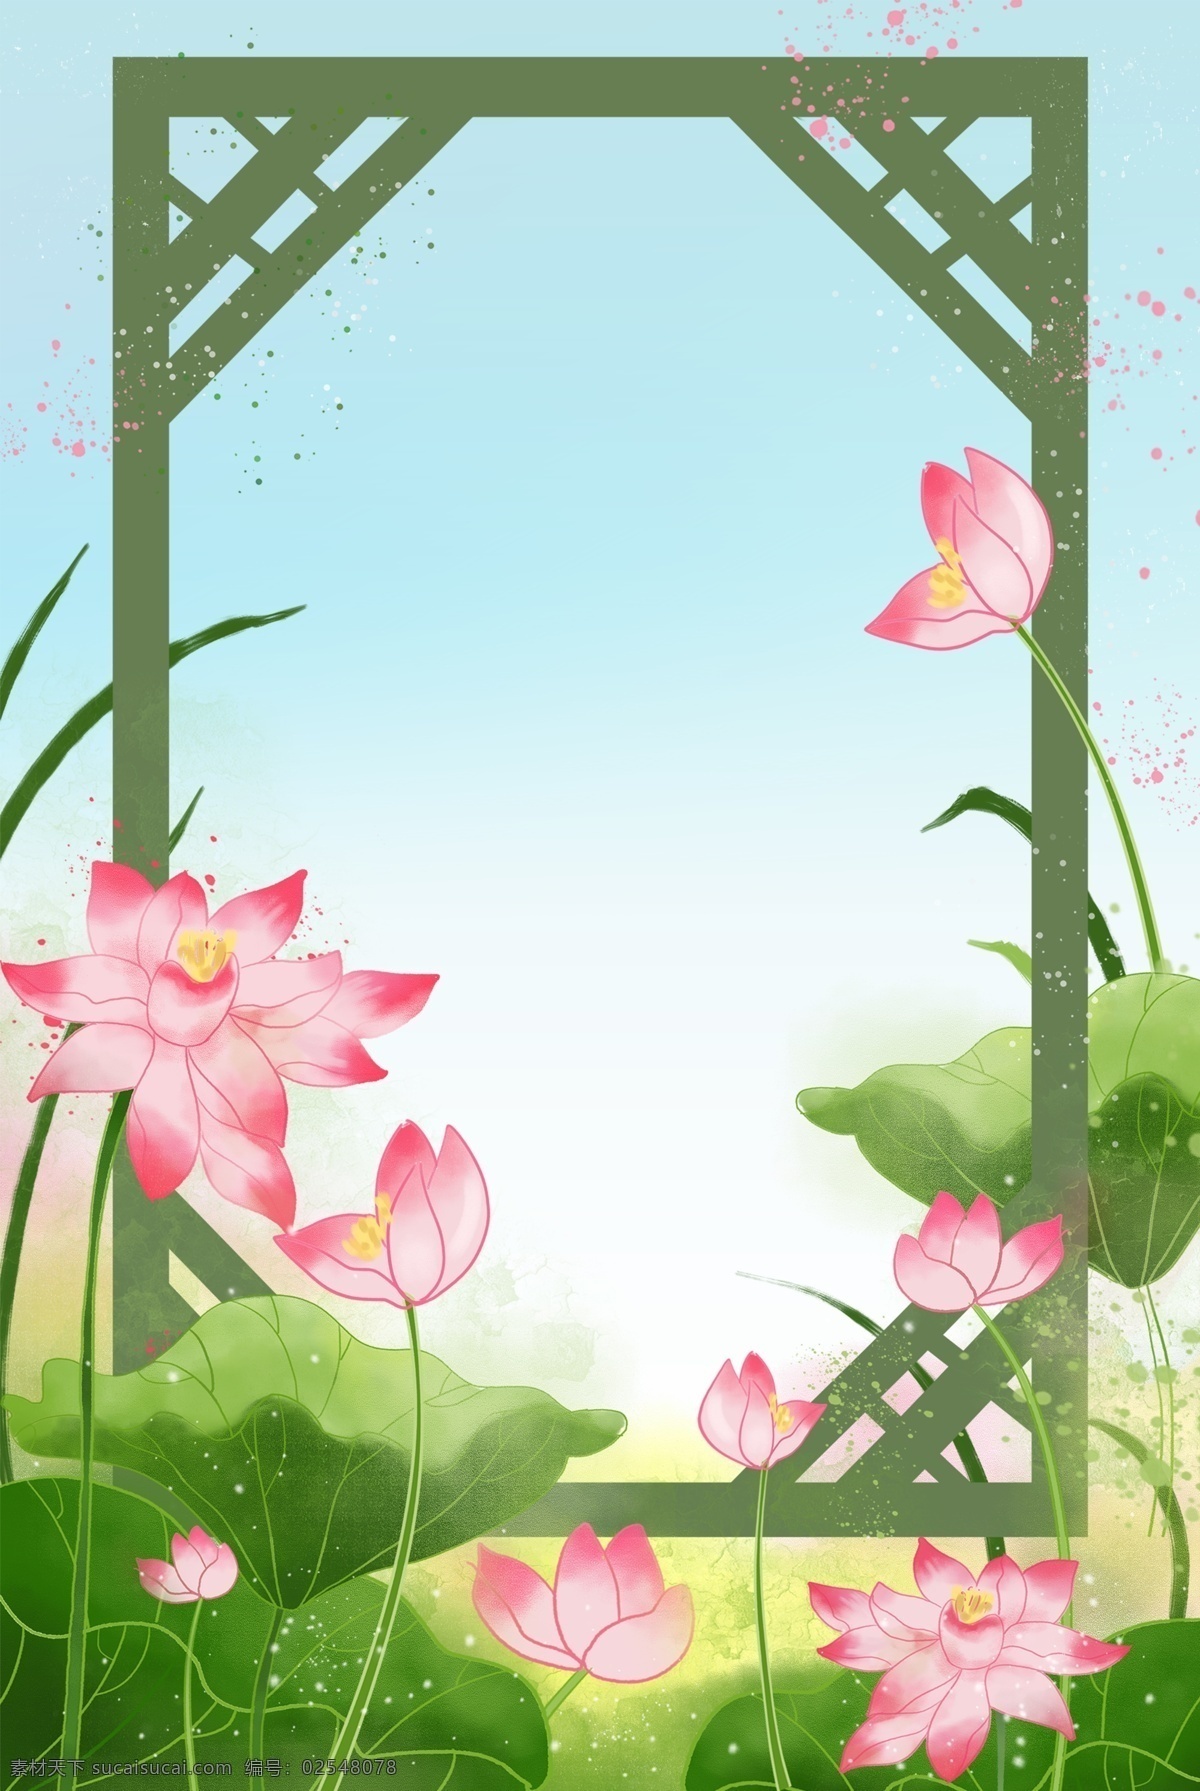 夏季 荷花 荷叶 海报 背景 夏季荷花 手绘荷花 粉色荷花 绿色荷叶 荷叶水珠 荷花叶 植物 花瓣